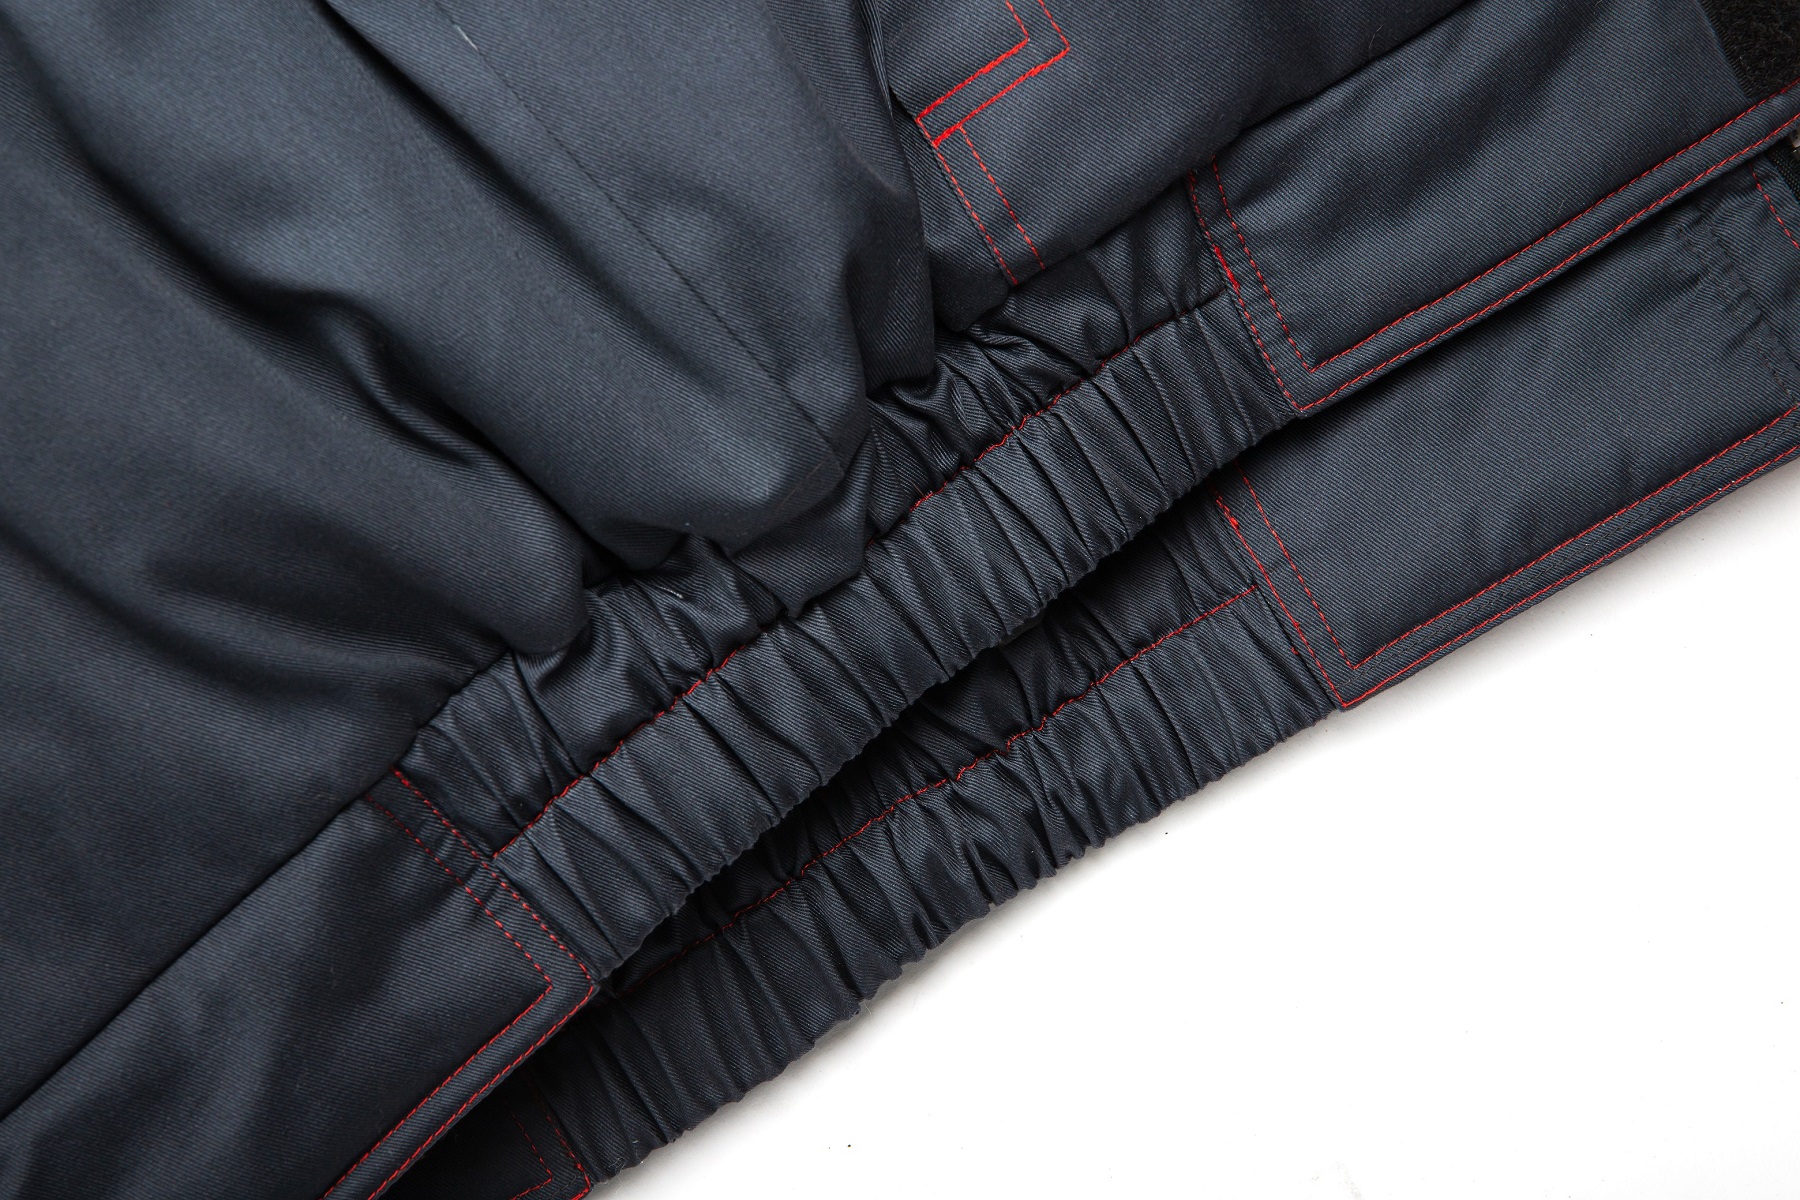 Куртка зимняя укороченная Фаворит NEW (тк.Балтекс,210), т.серый/серый